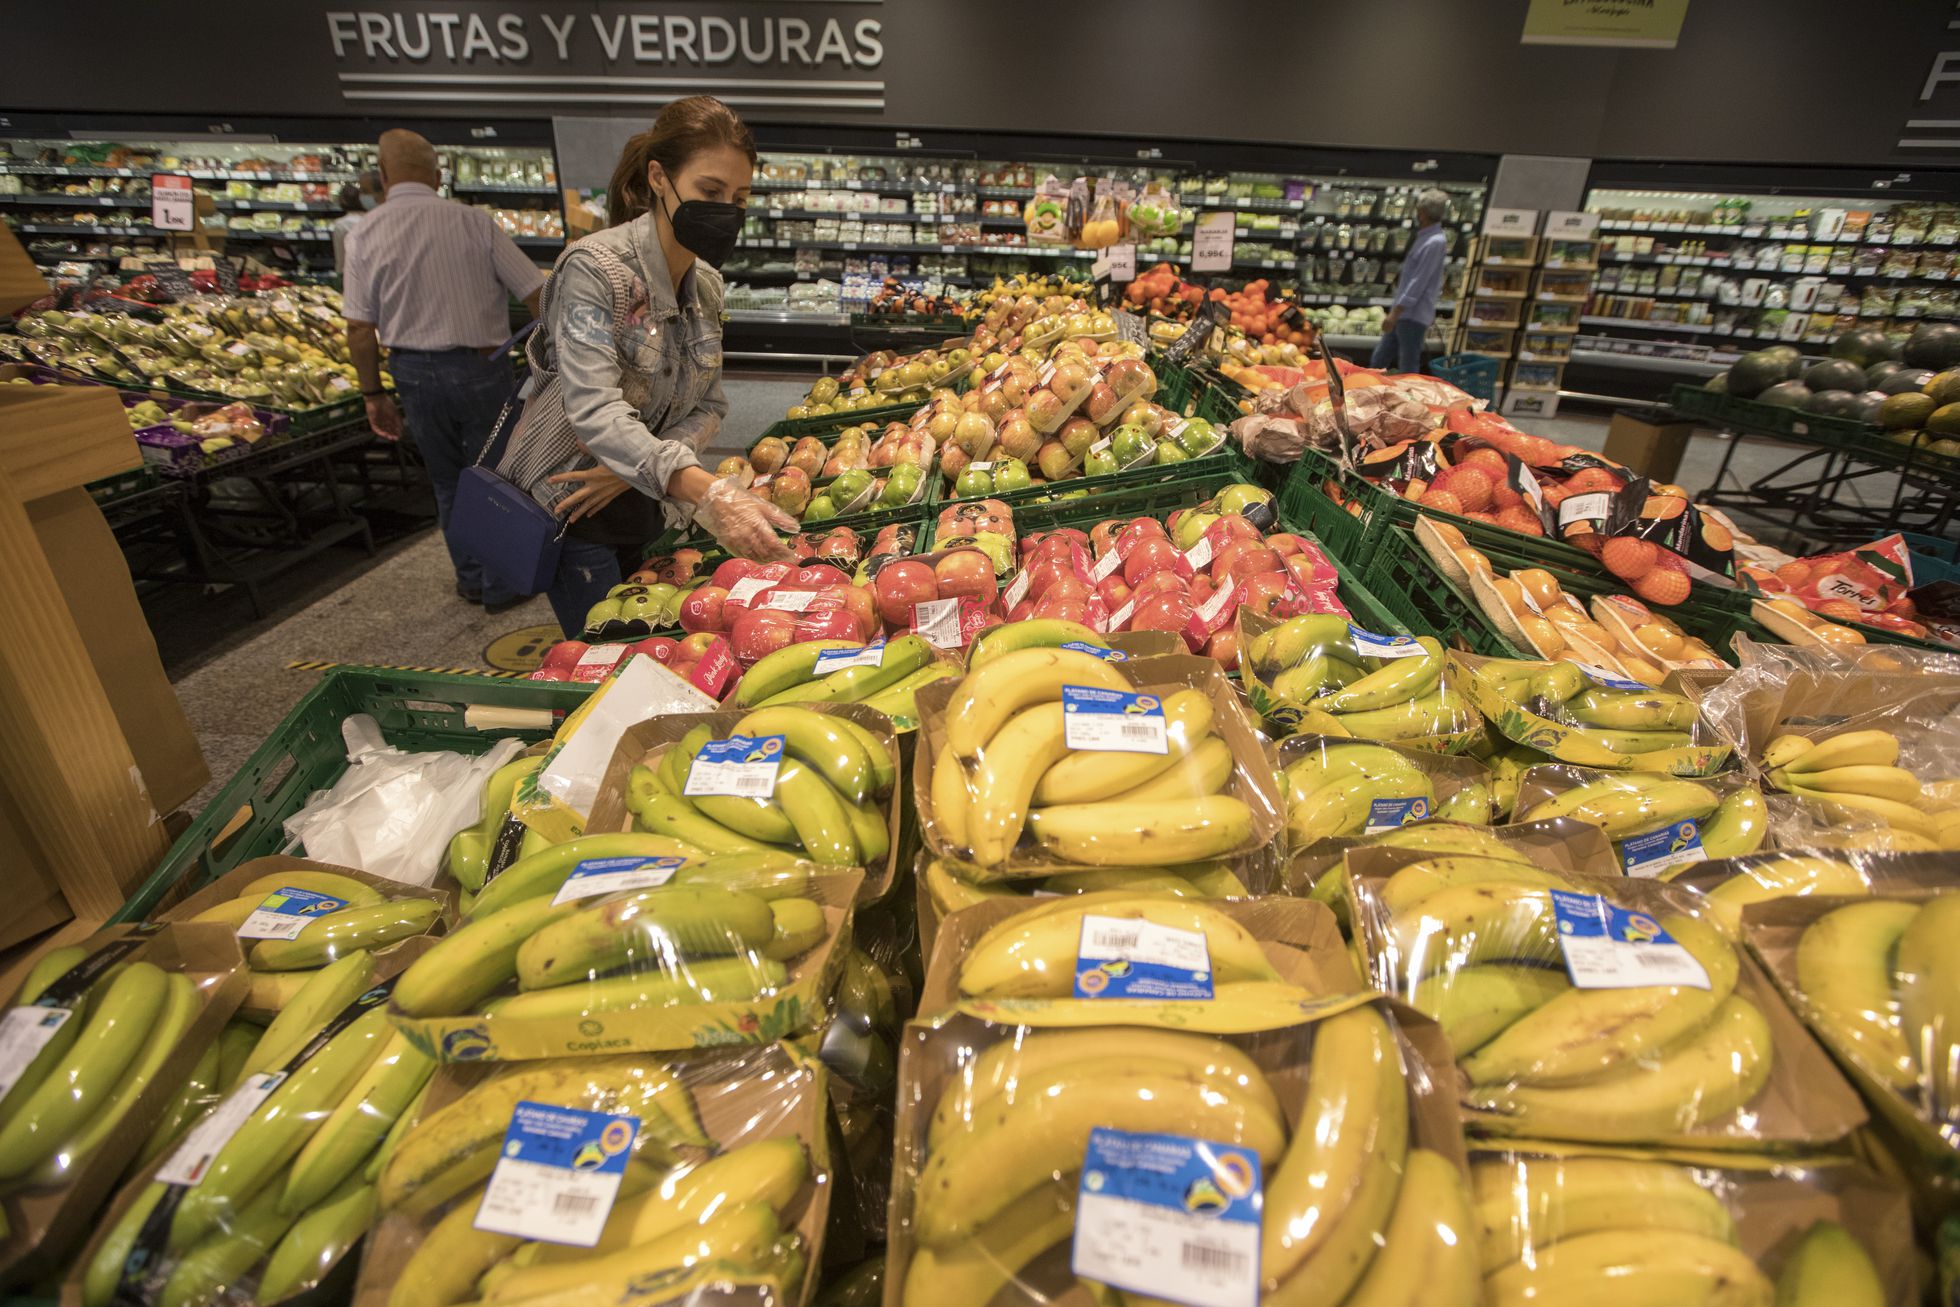 Spania interzice vânzarea de fructe și legume în ambalaje din plastic începând cu 2023